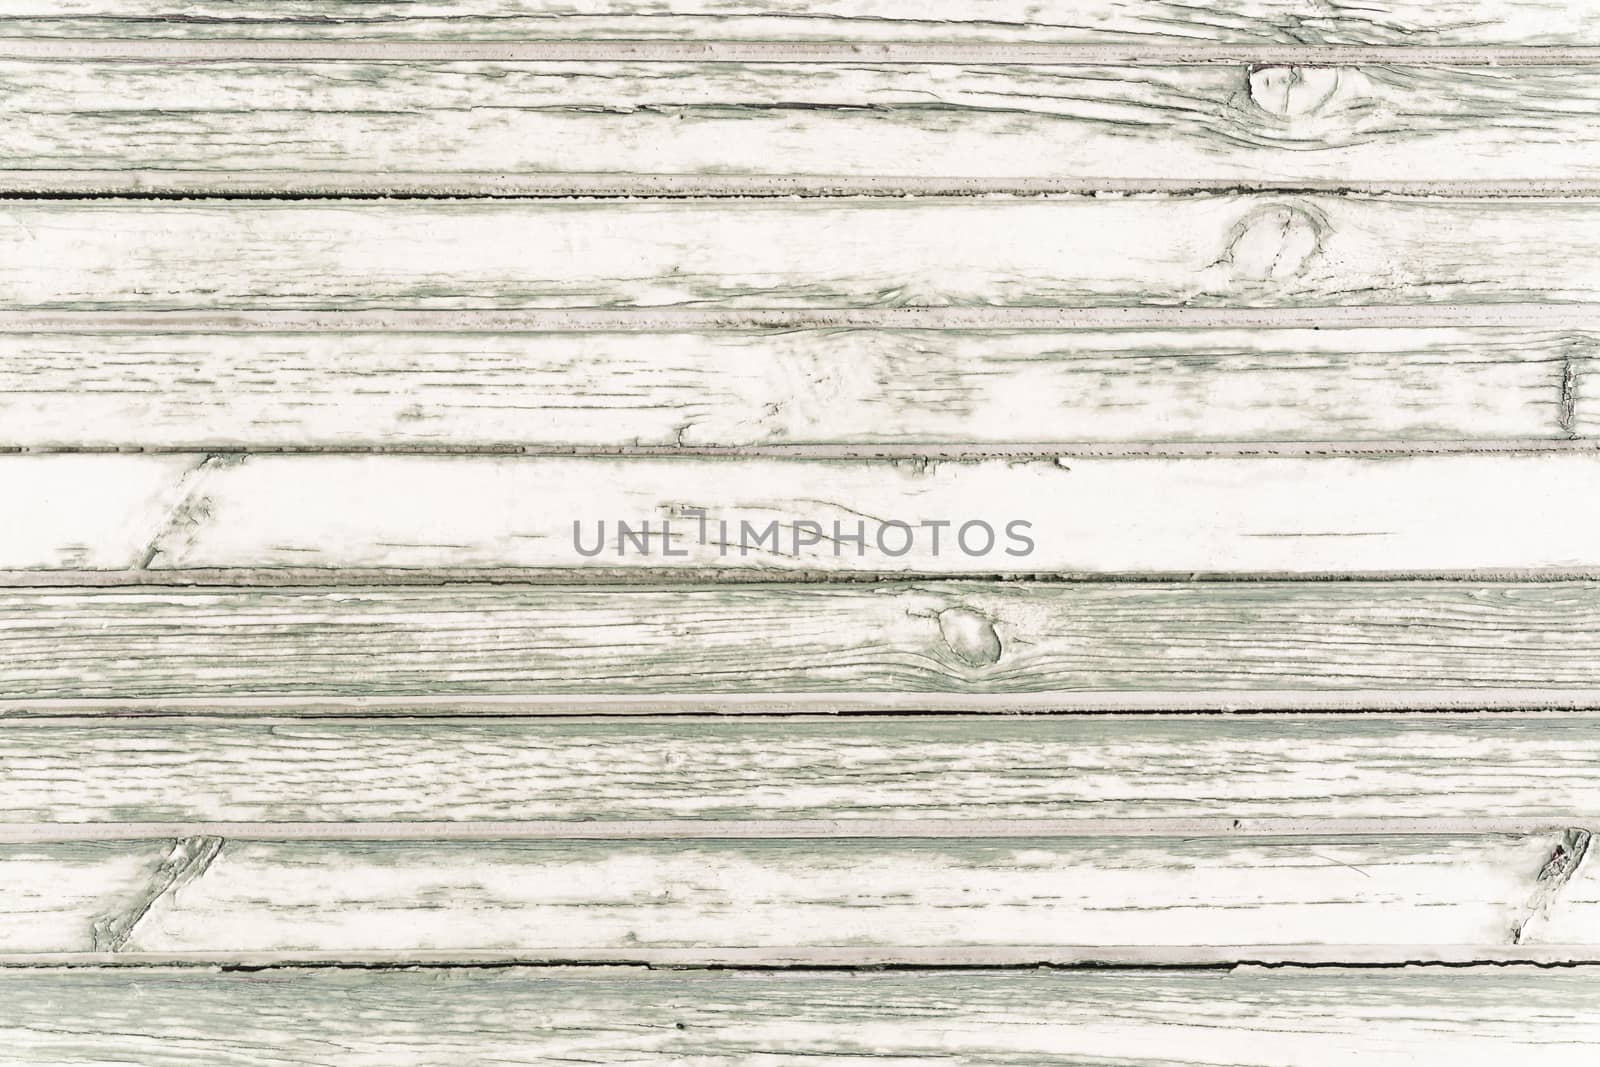 White washed painted wood plank background texture, horizontal image.